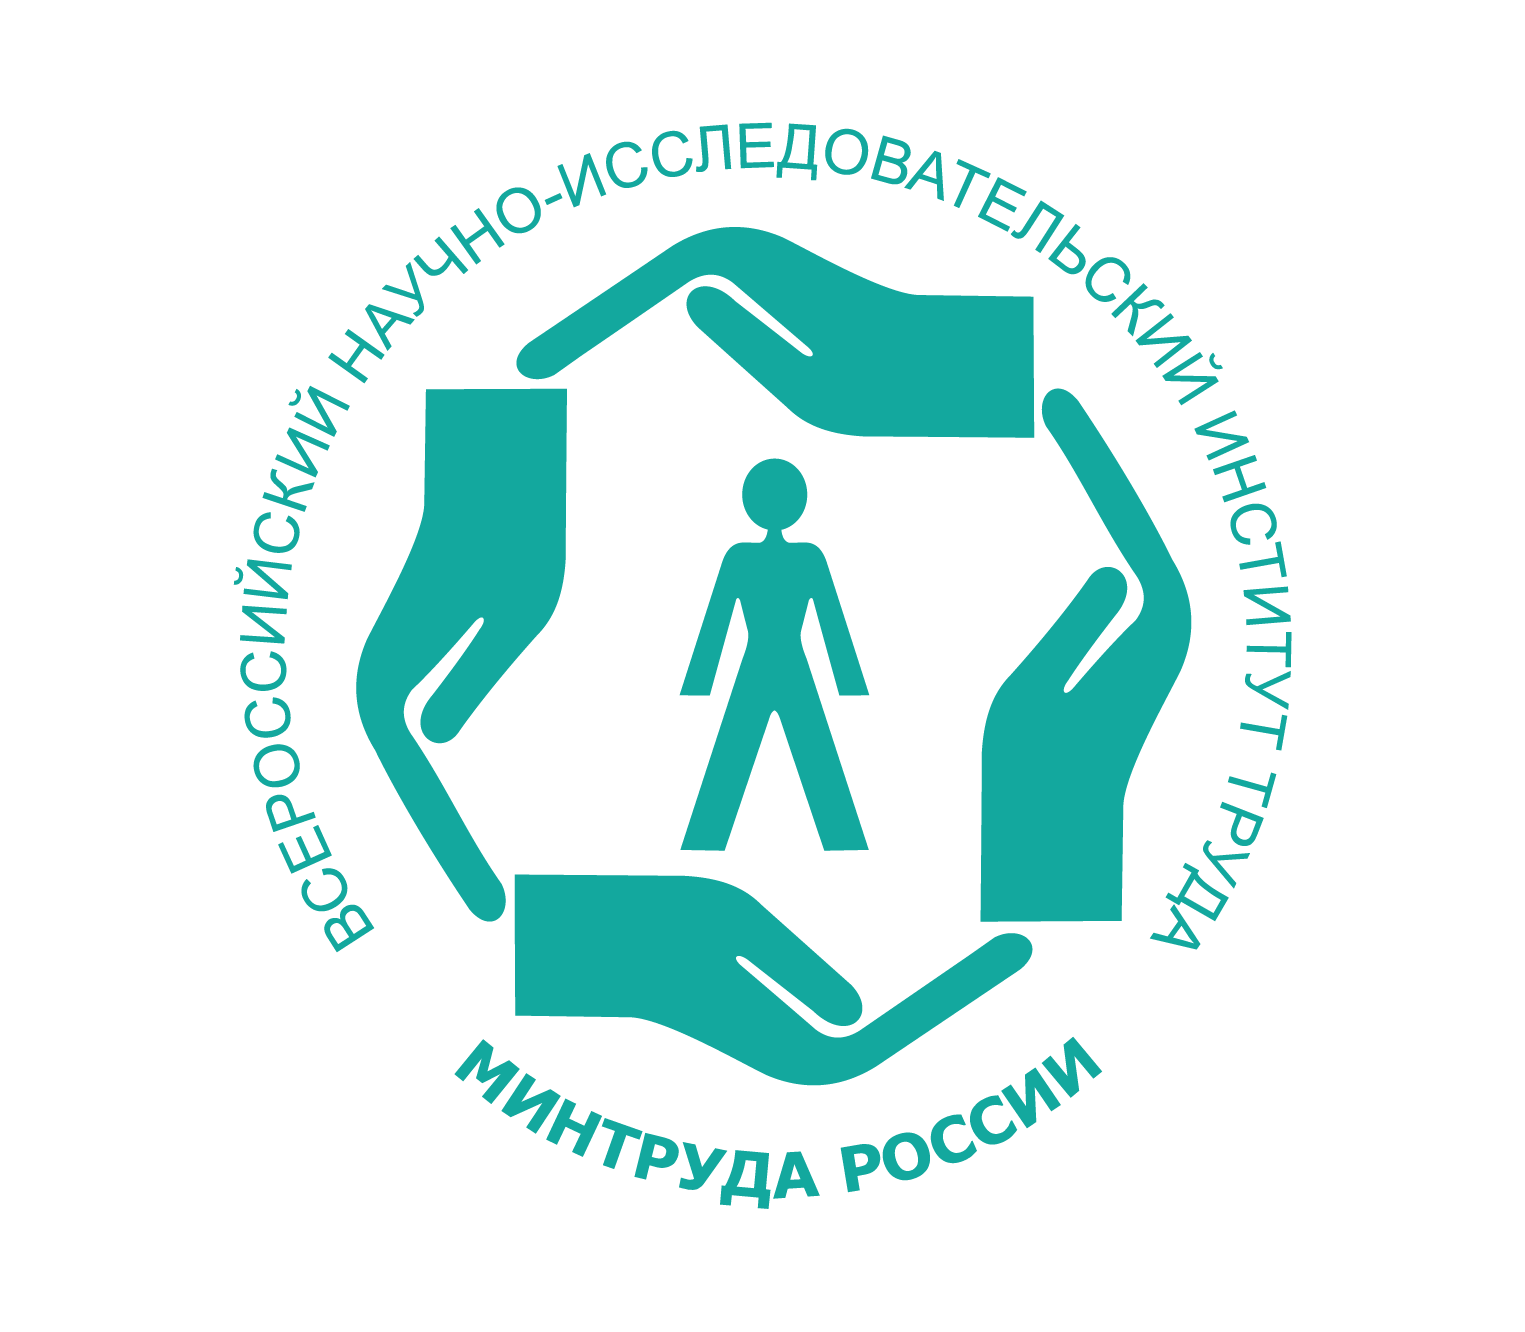 Министерство труда и социального обслуживания населения. Охрана труда. Логотип по охране труда. Пиктограмма охрана труда.